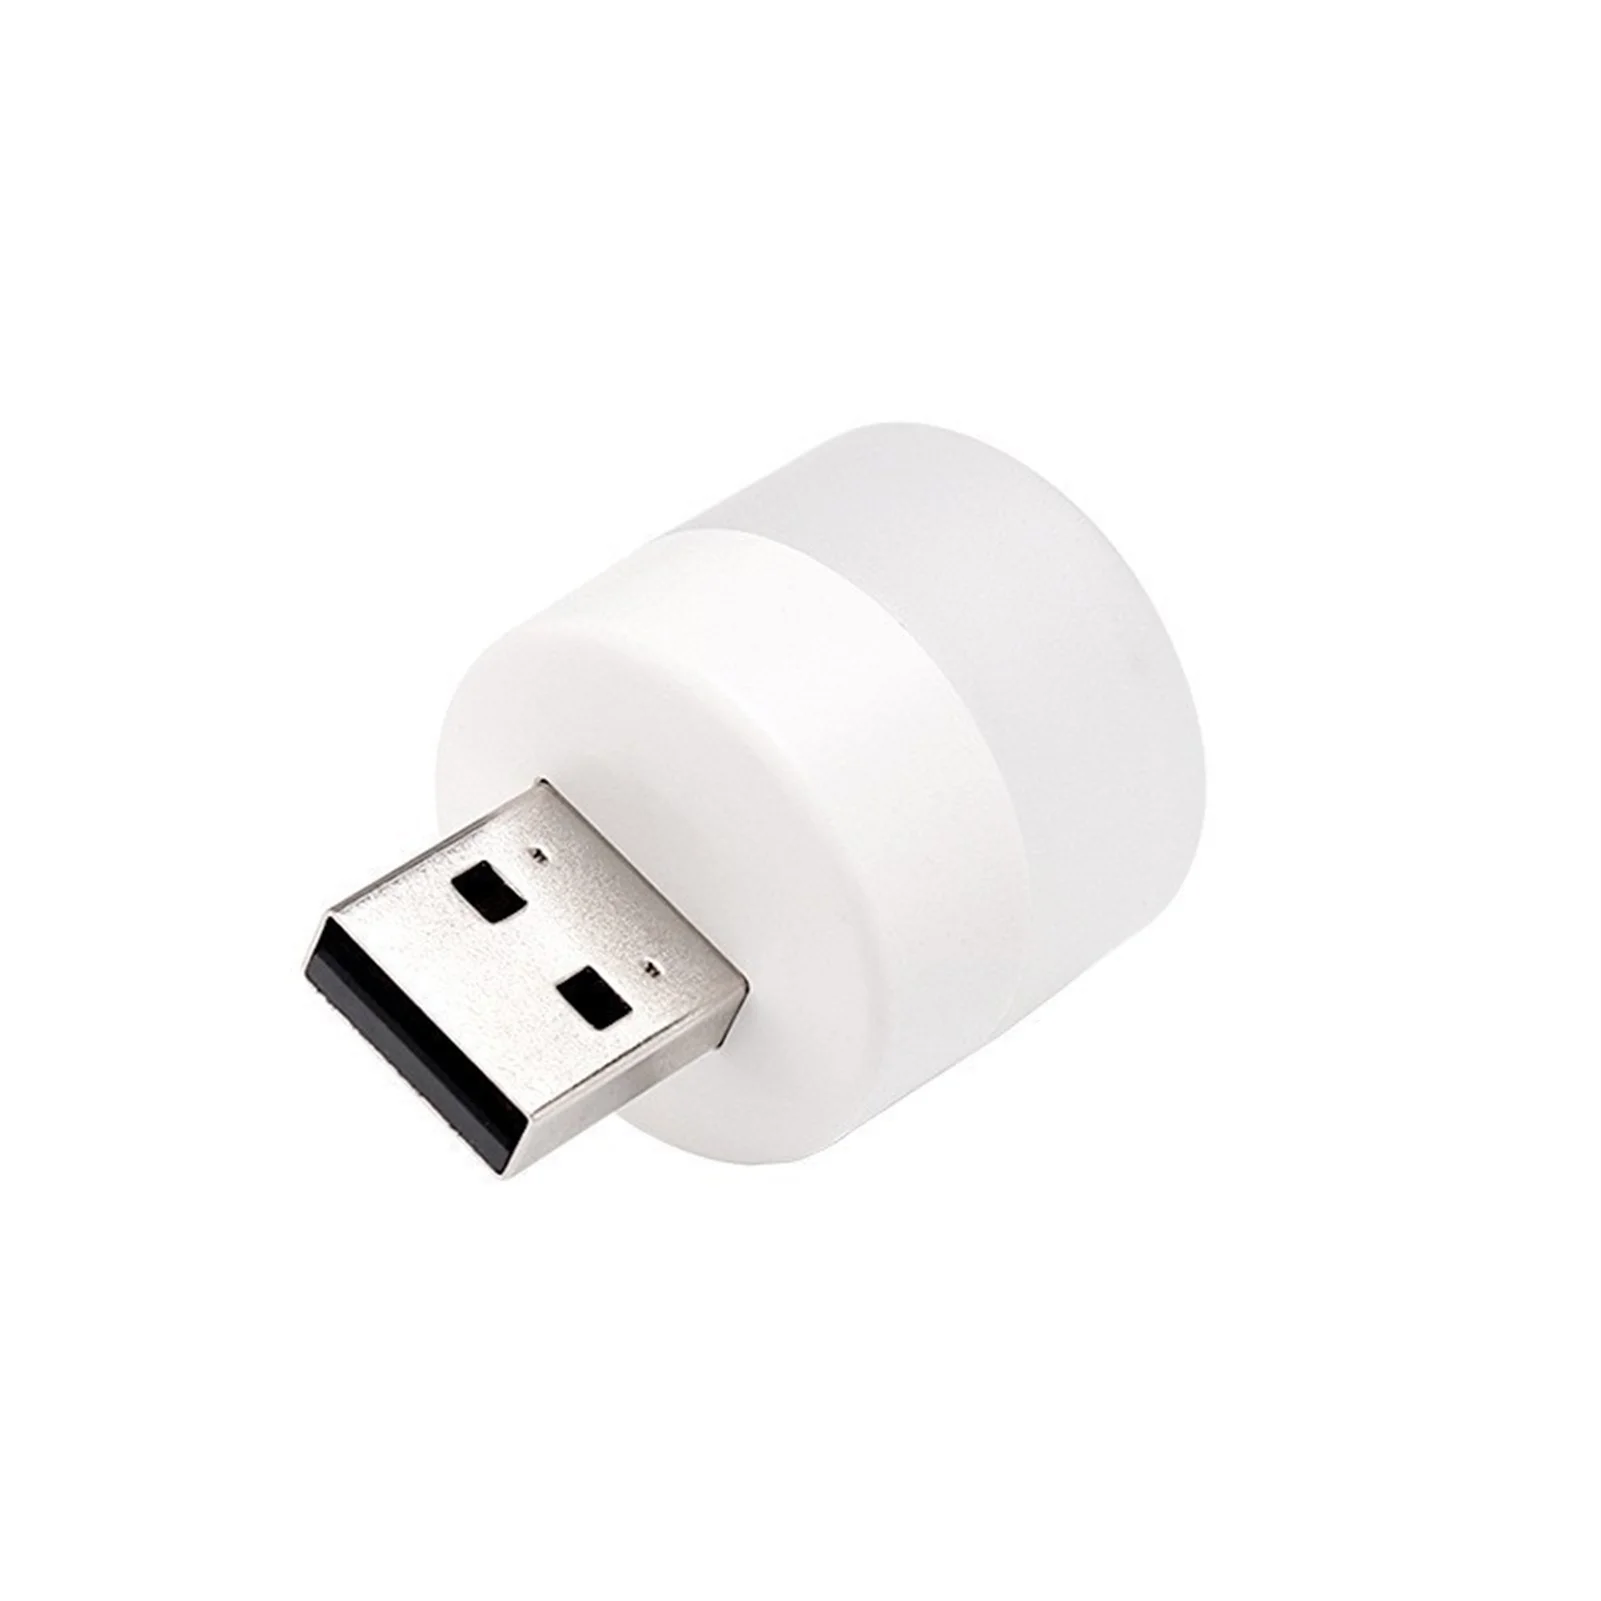 1 ~ 20ШТ USB-Книжные Фонари USB Night Light Mini LED Night Light USB Plug Lamp Power Bank Зарядка Маленького Круглого Глазка Для Чтения - 4